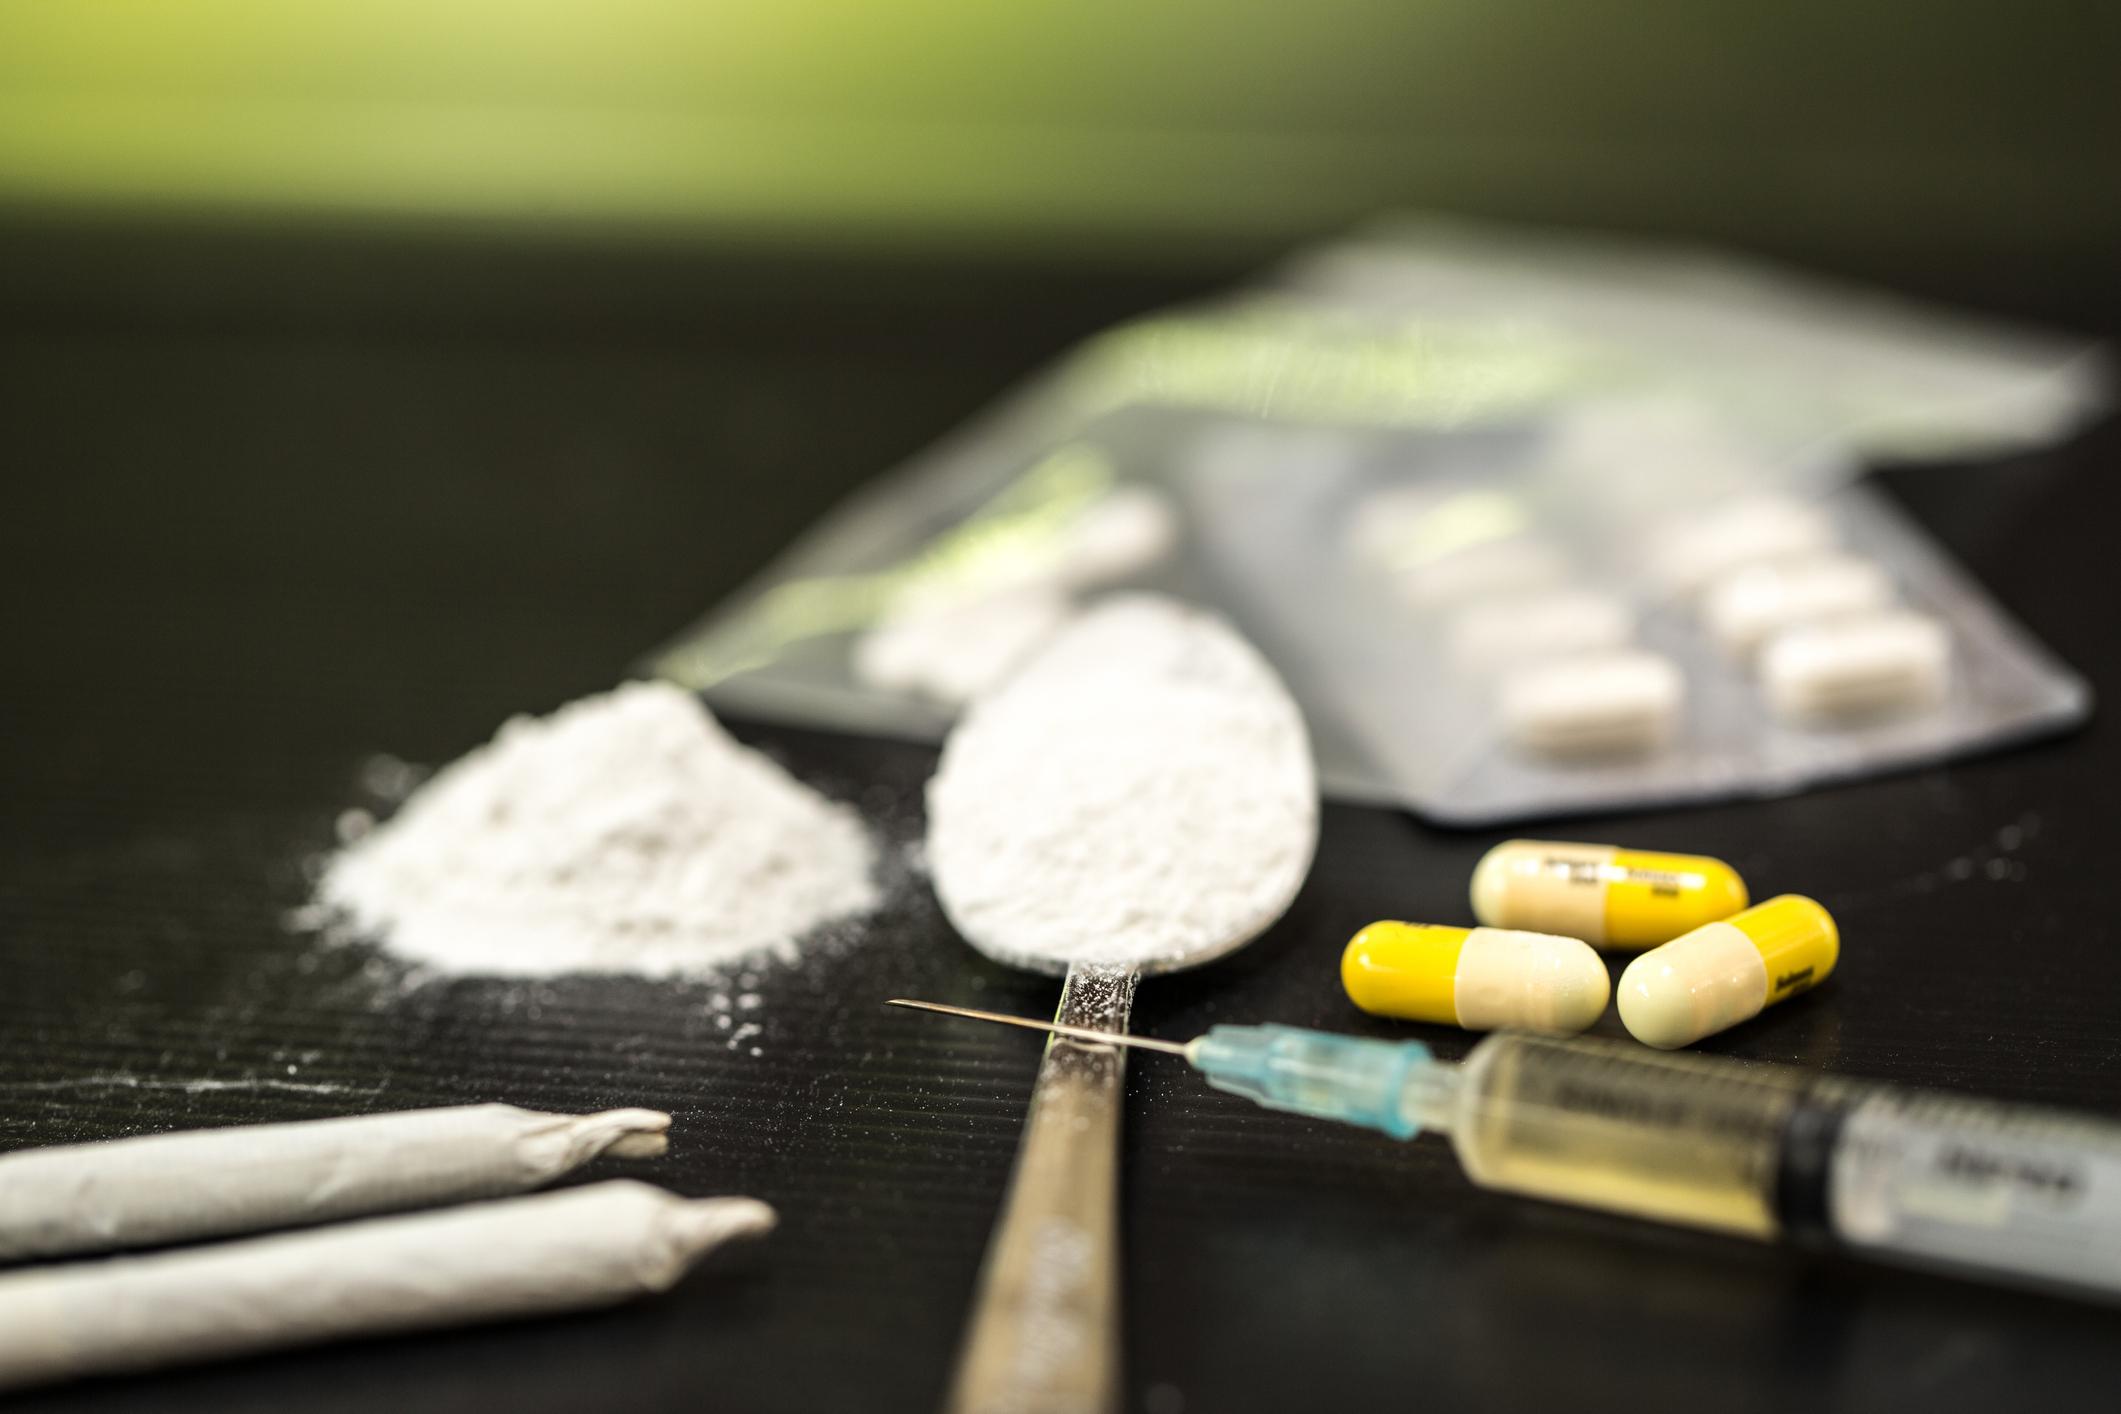 Una cucharillas con cocaína, dos porros de marihuana, una inyectora con heroína junto a pastillas.